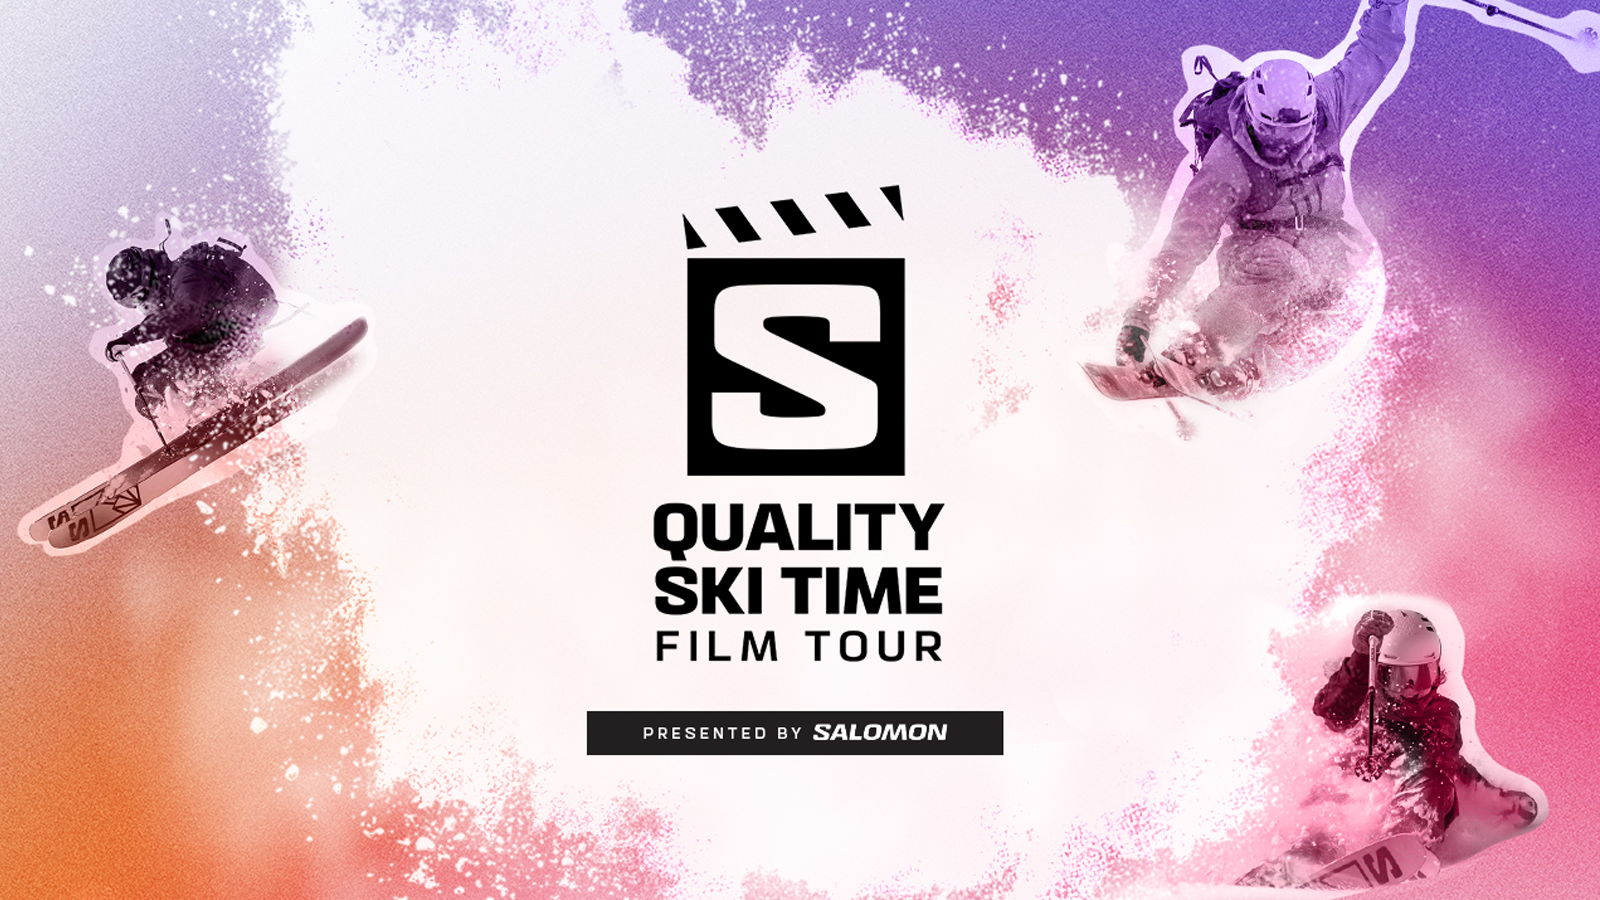 Menselijk ras PapoeaNieuwGuinea Boekhouder Salomon's Quality Ski Time Film Tour kicks off the 22-23 season - FREESKIER